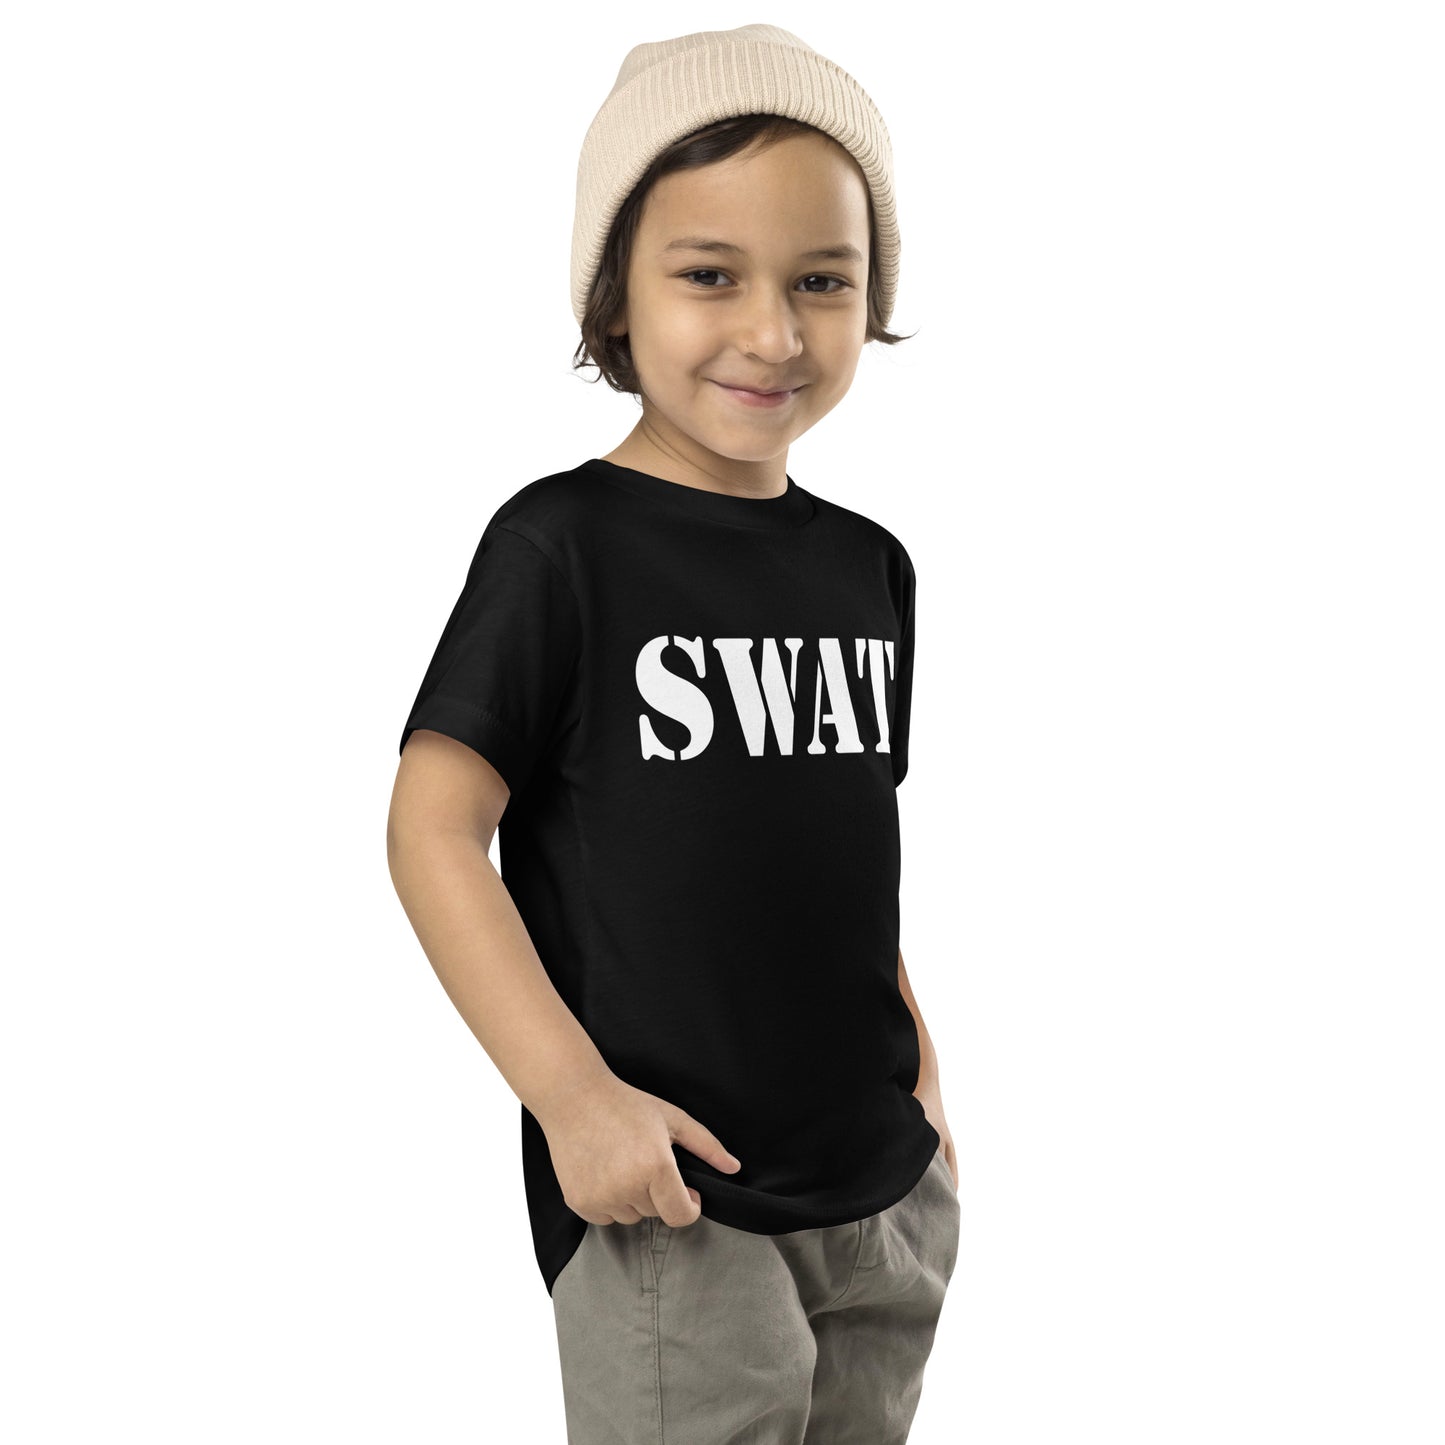 SWAT T-Shirt, Toddler